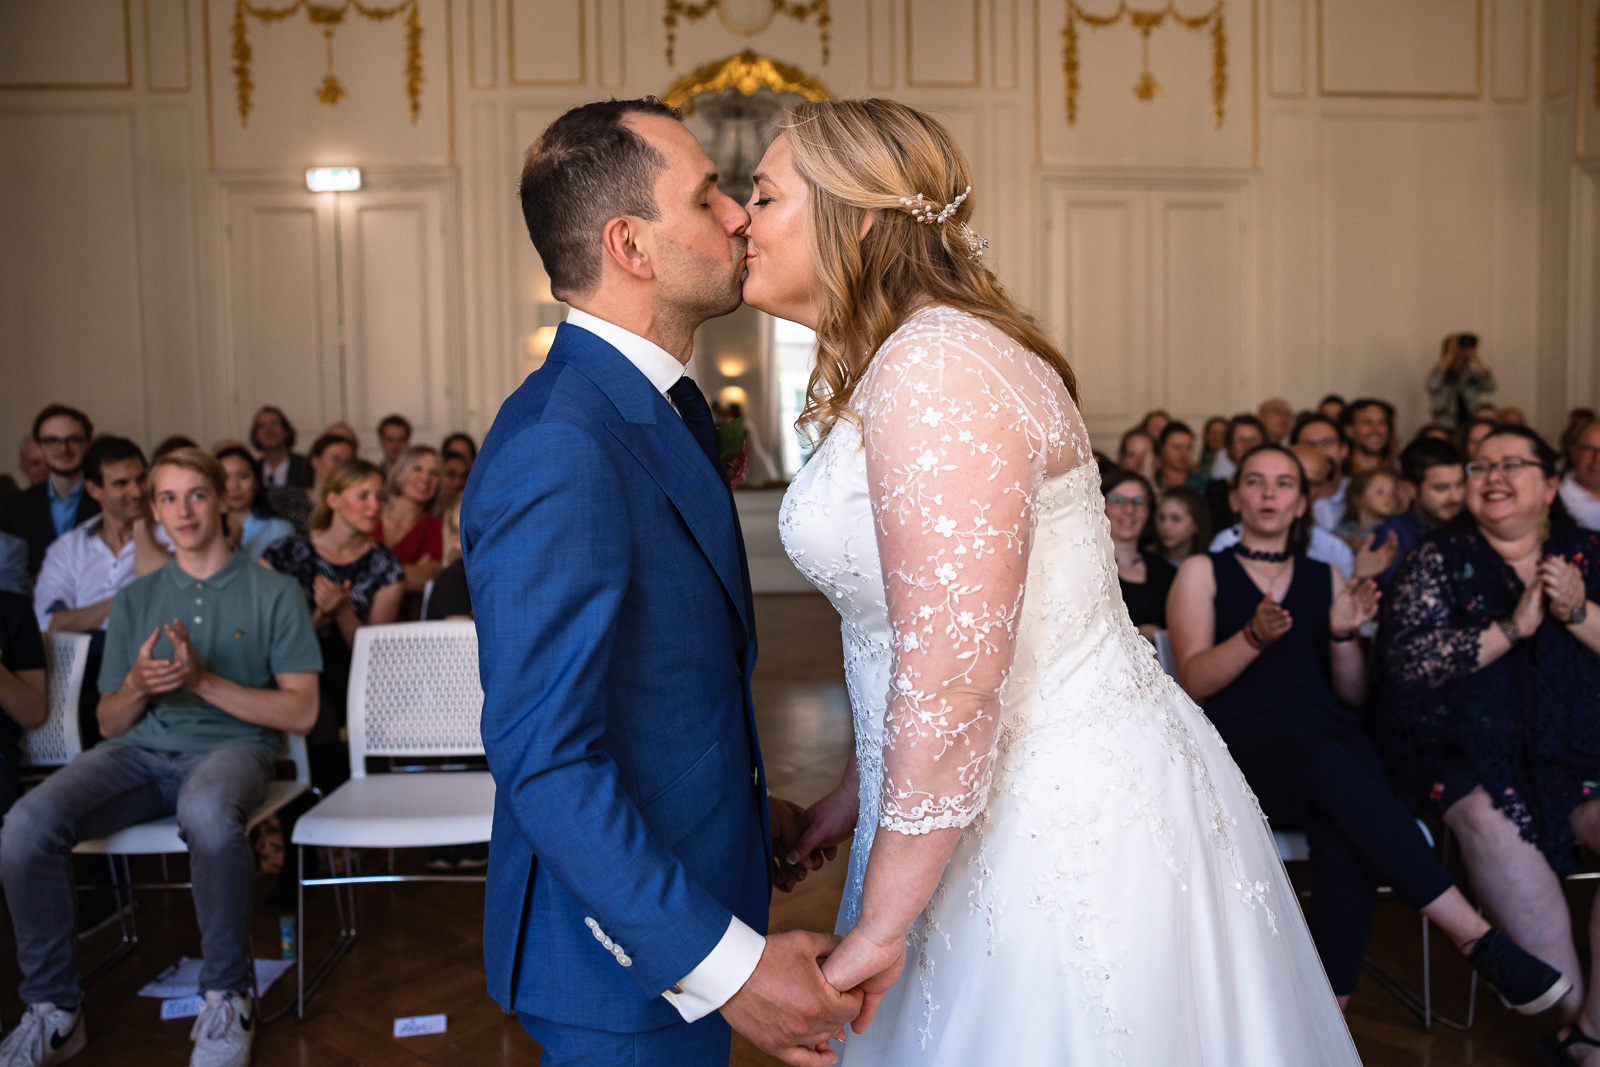 Eerste kus bruidspaar tijdens ceremonie Trouwfotograaf Spaansche Hof Den Haag